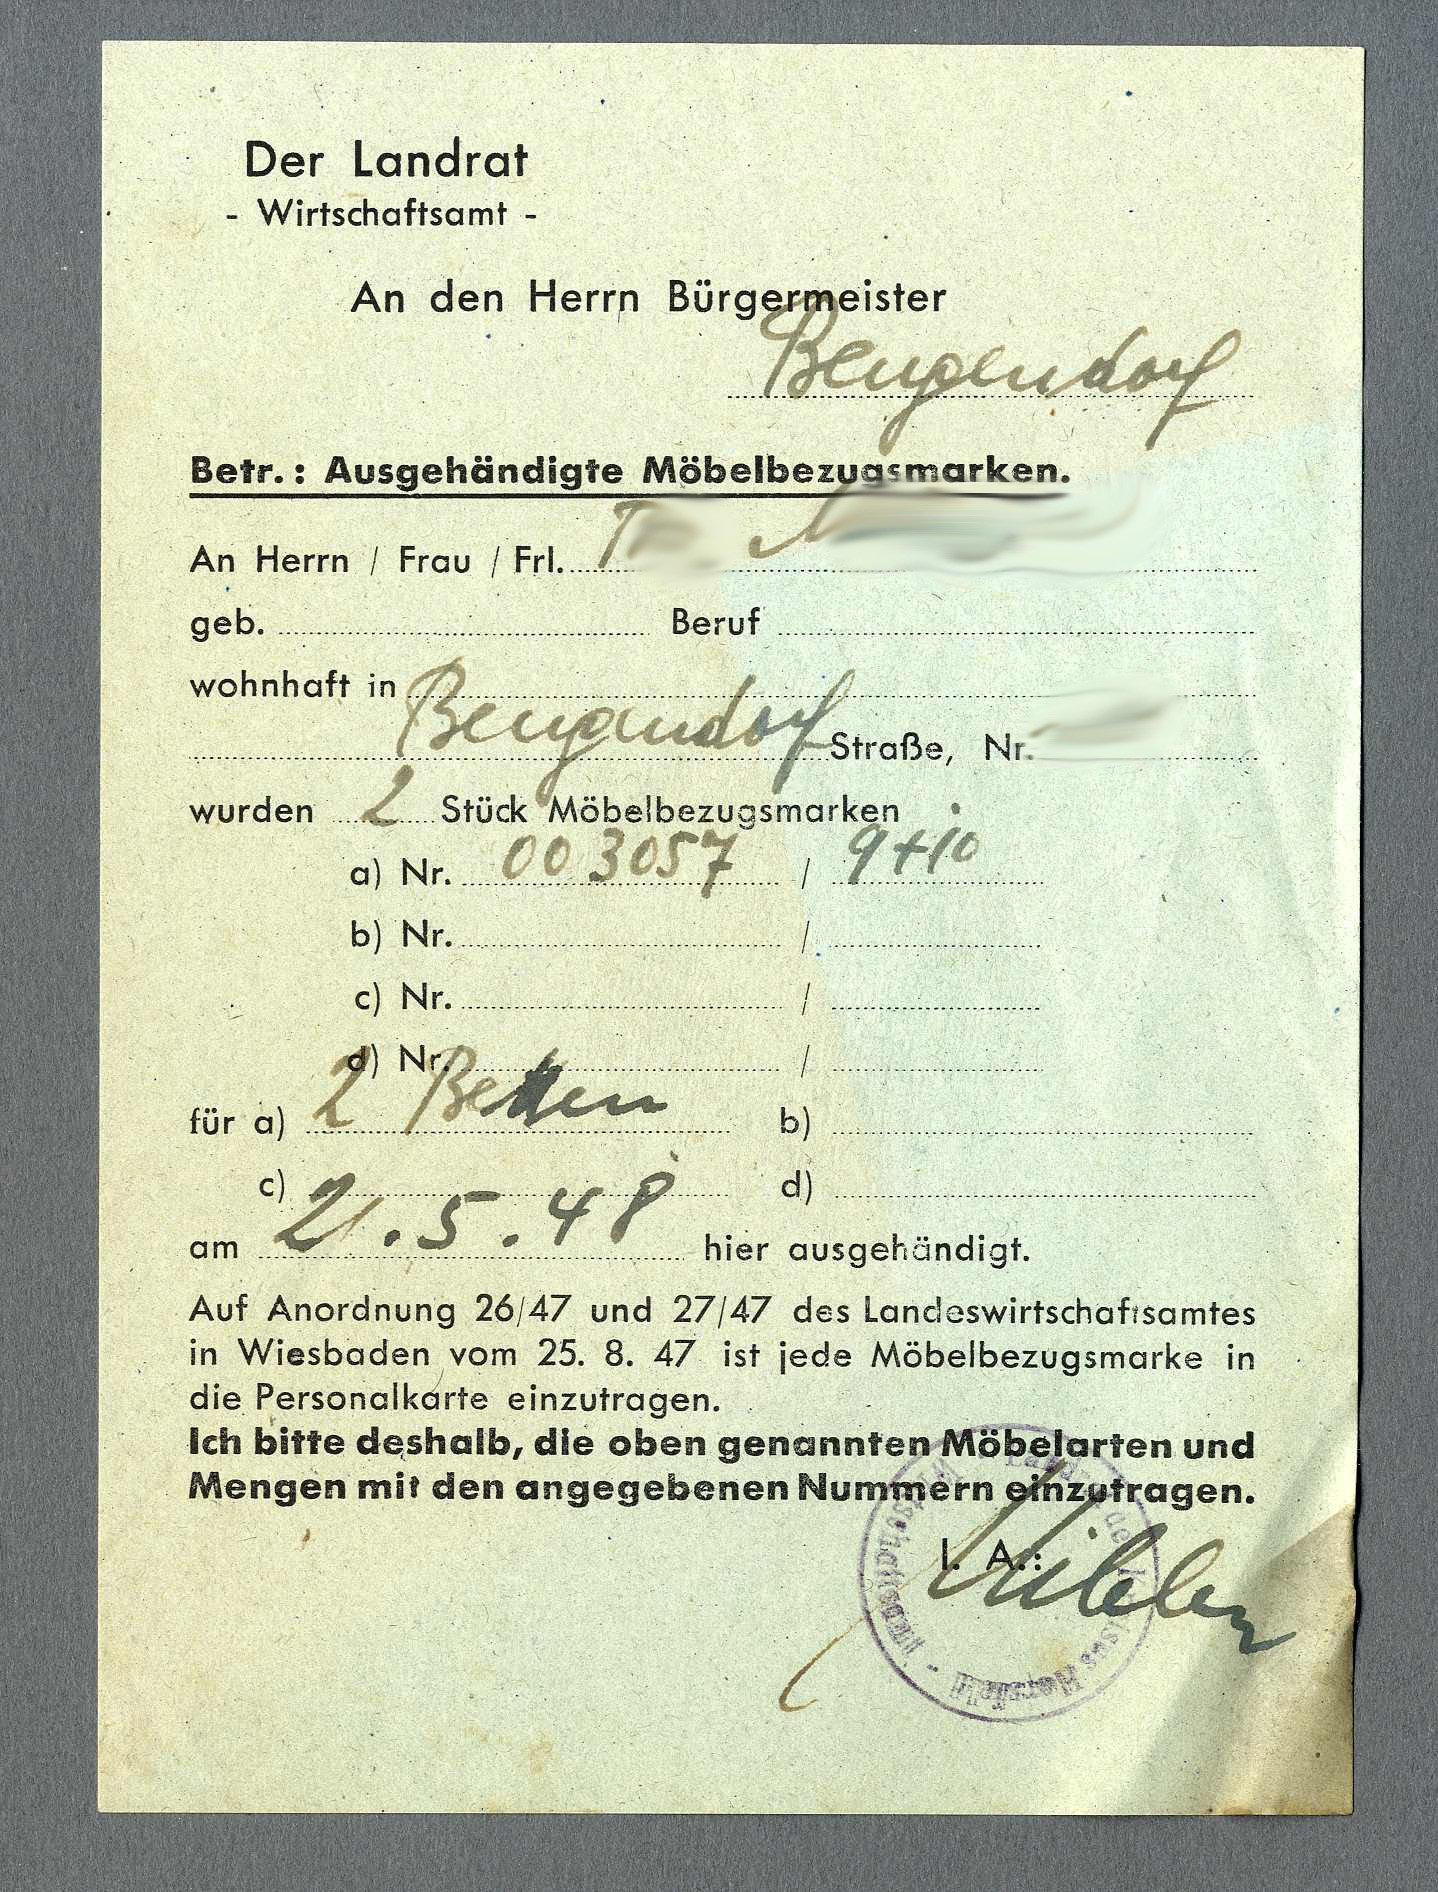 Quittung für Bezungsmarken 'Möbelbezugsmarken' (Werra-Kalibergbau-Museum, Heringen/W. CC BY-NC-SA)